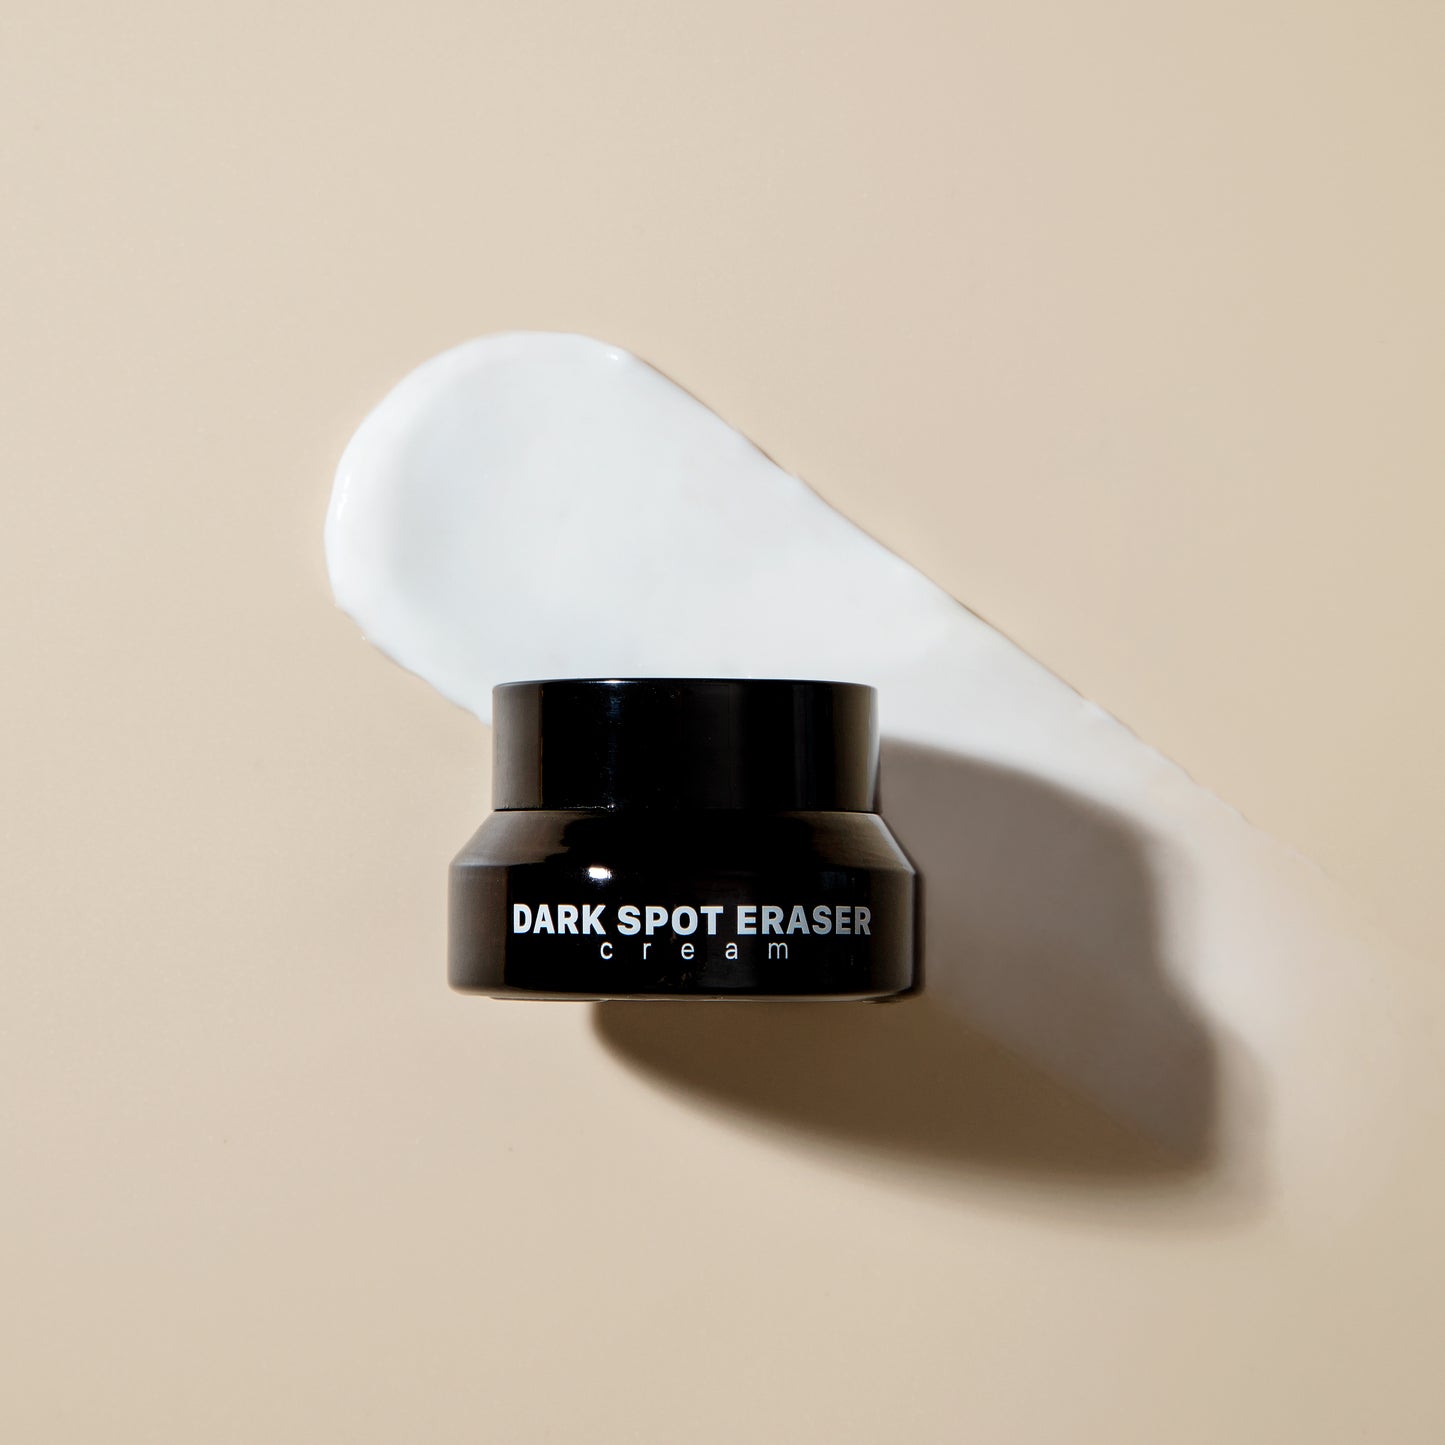 Kem dưỡng Dark Spot Eraser giảm nám tàn nhang - 2 phiên bản